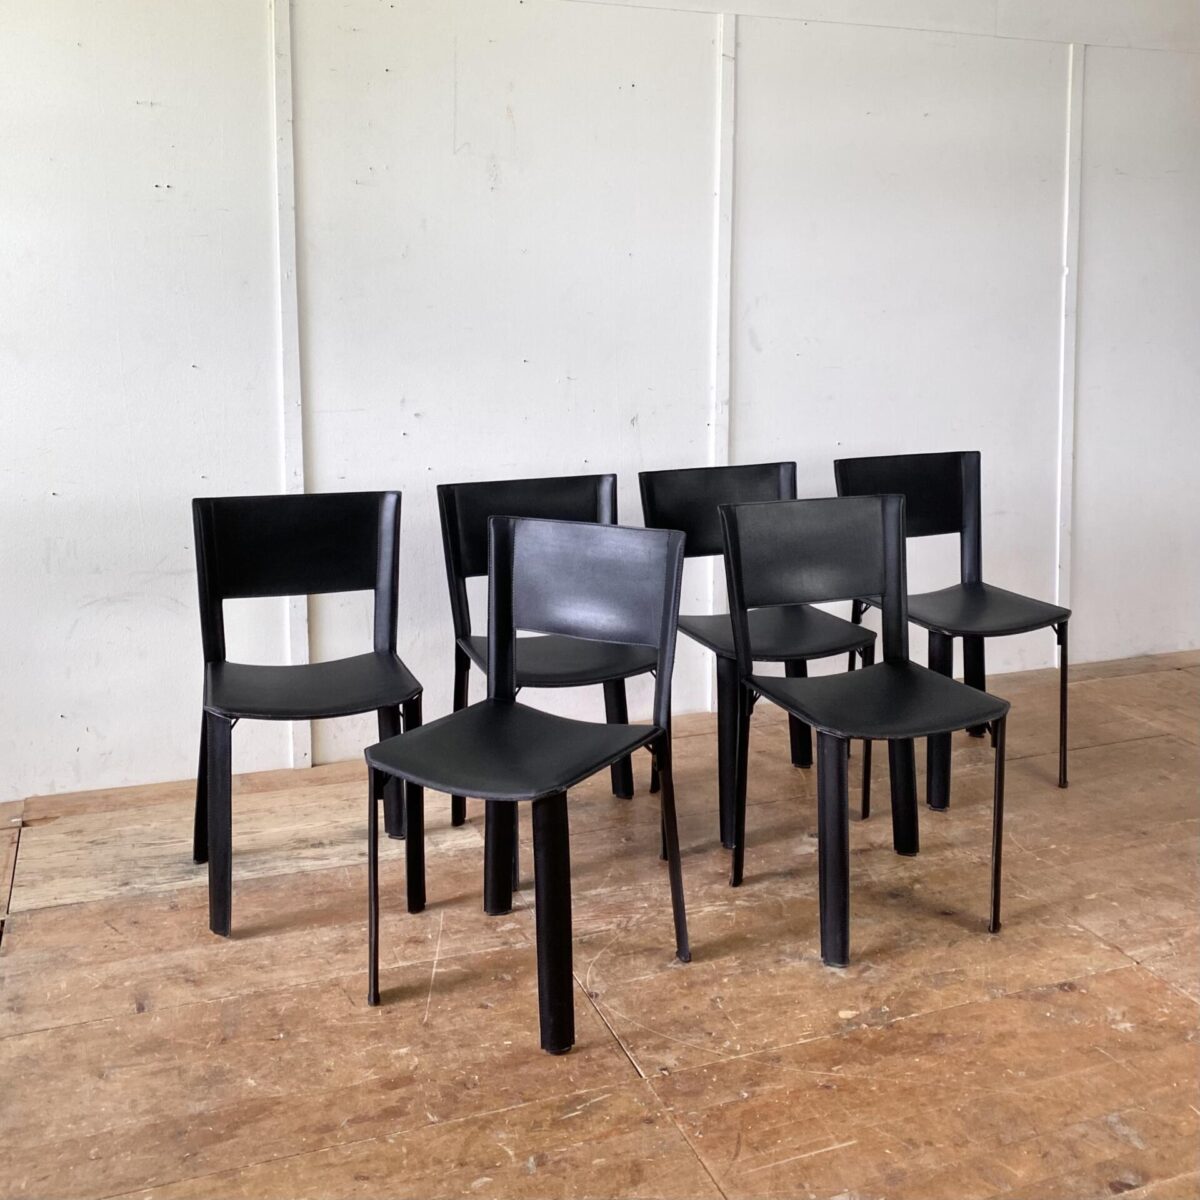 Deuxieme.shop Italienische Leder Stühle. 6er Set Esszimmer Stühle aus Leder. Ein Hersteller ist nicht ersichtlich, qualitative Verarbeitung. Matteo Grassi Verschnitt. An einem Stuhl fehlen zwei Kunststofffüsse, kleine Abschürfungen an den Kanten, ansonsten in gepflegtem Zustand. Preis fürs Set. 